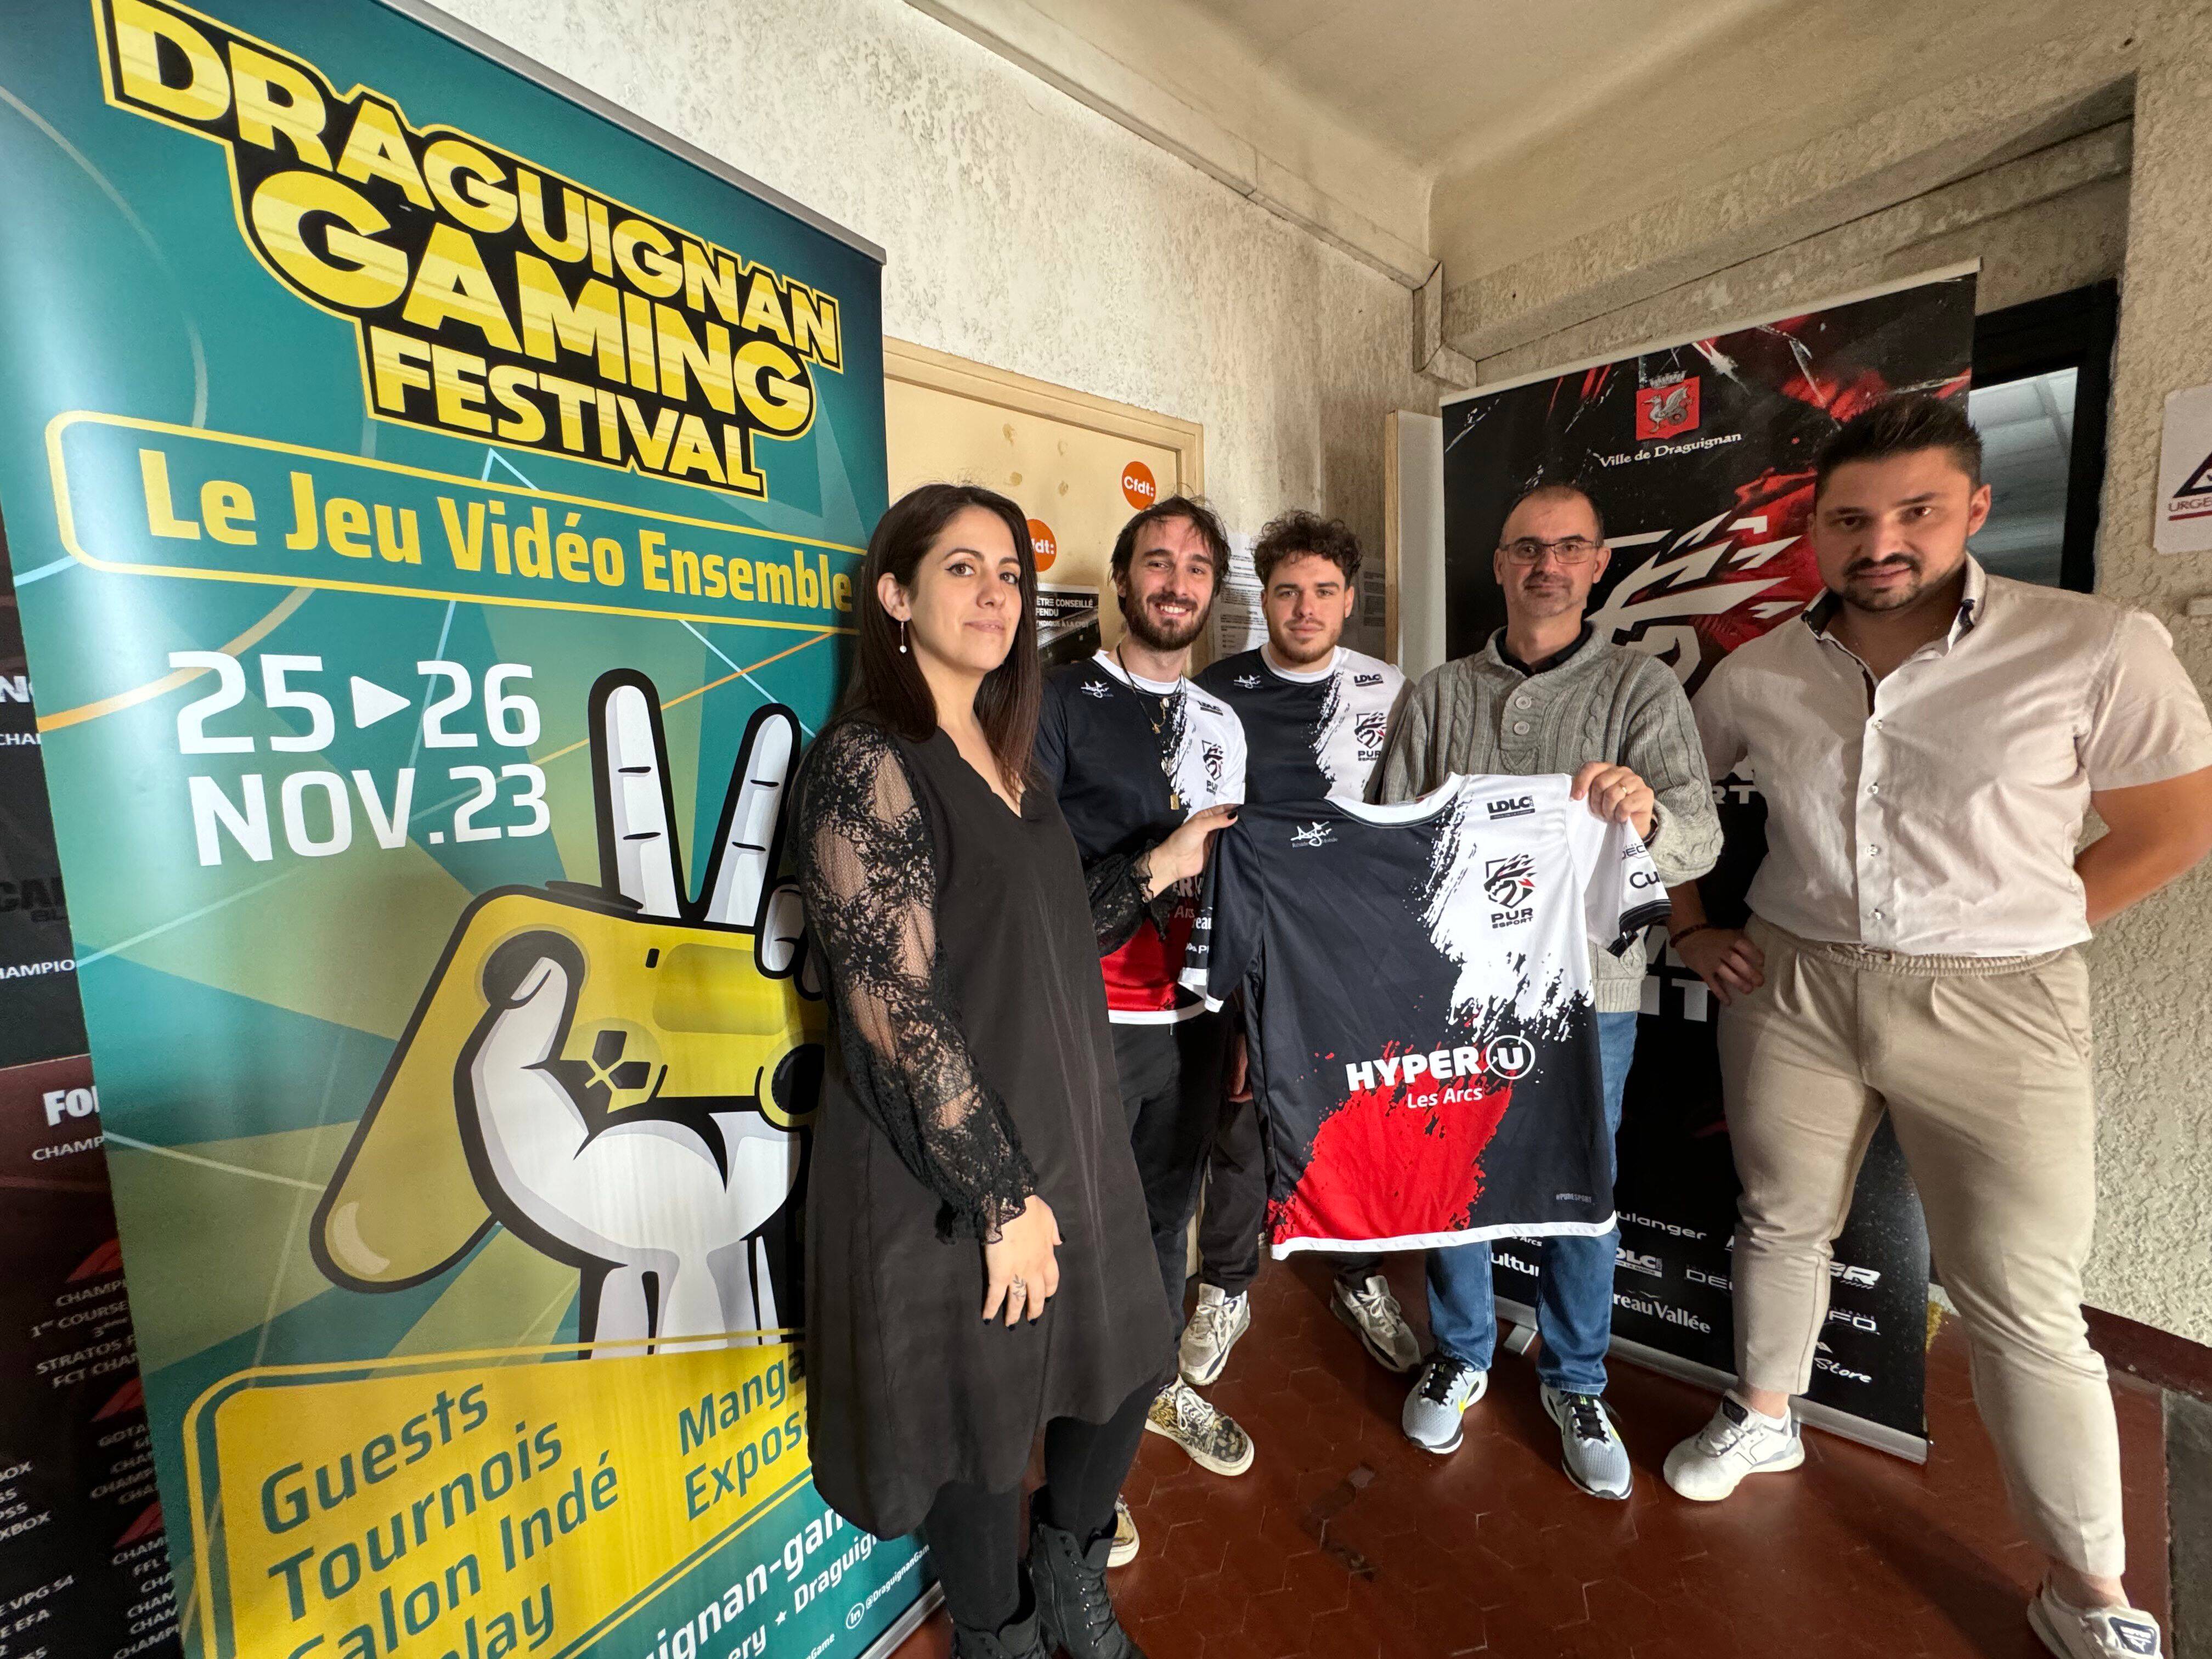 “Il y aura plein de surprises inédites”: le Draguignan gaming festival revient pour une 3e édition le week-end prochain